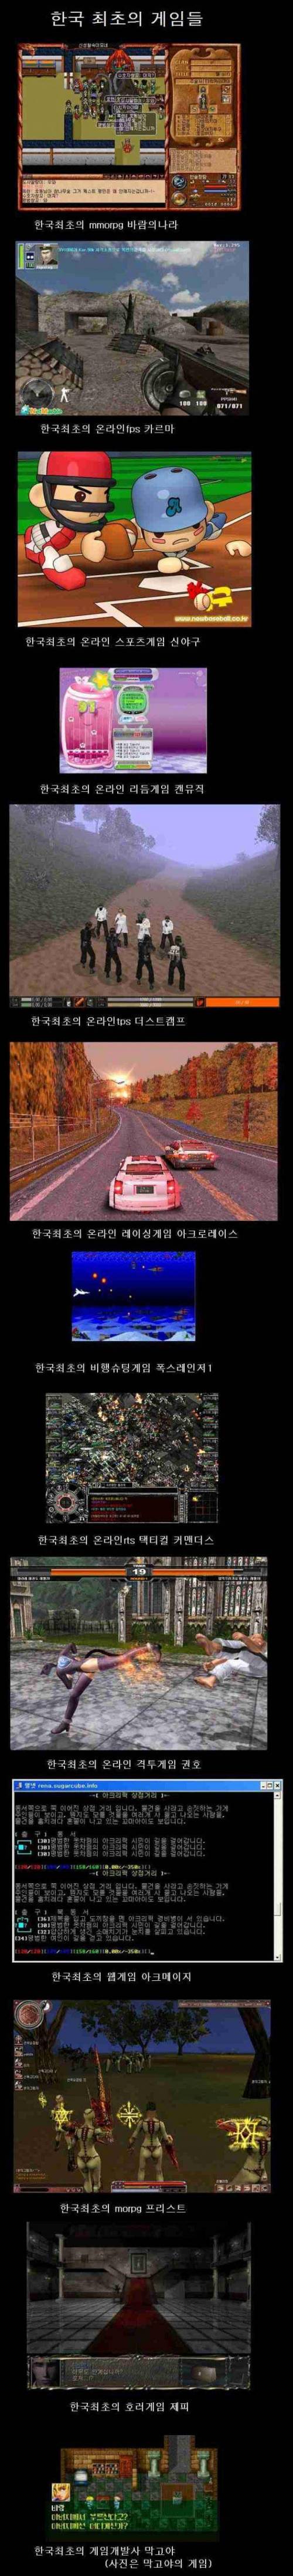 한국 최초의 기록을 가진 여러 가지 게임들